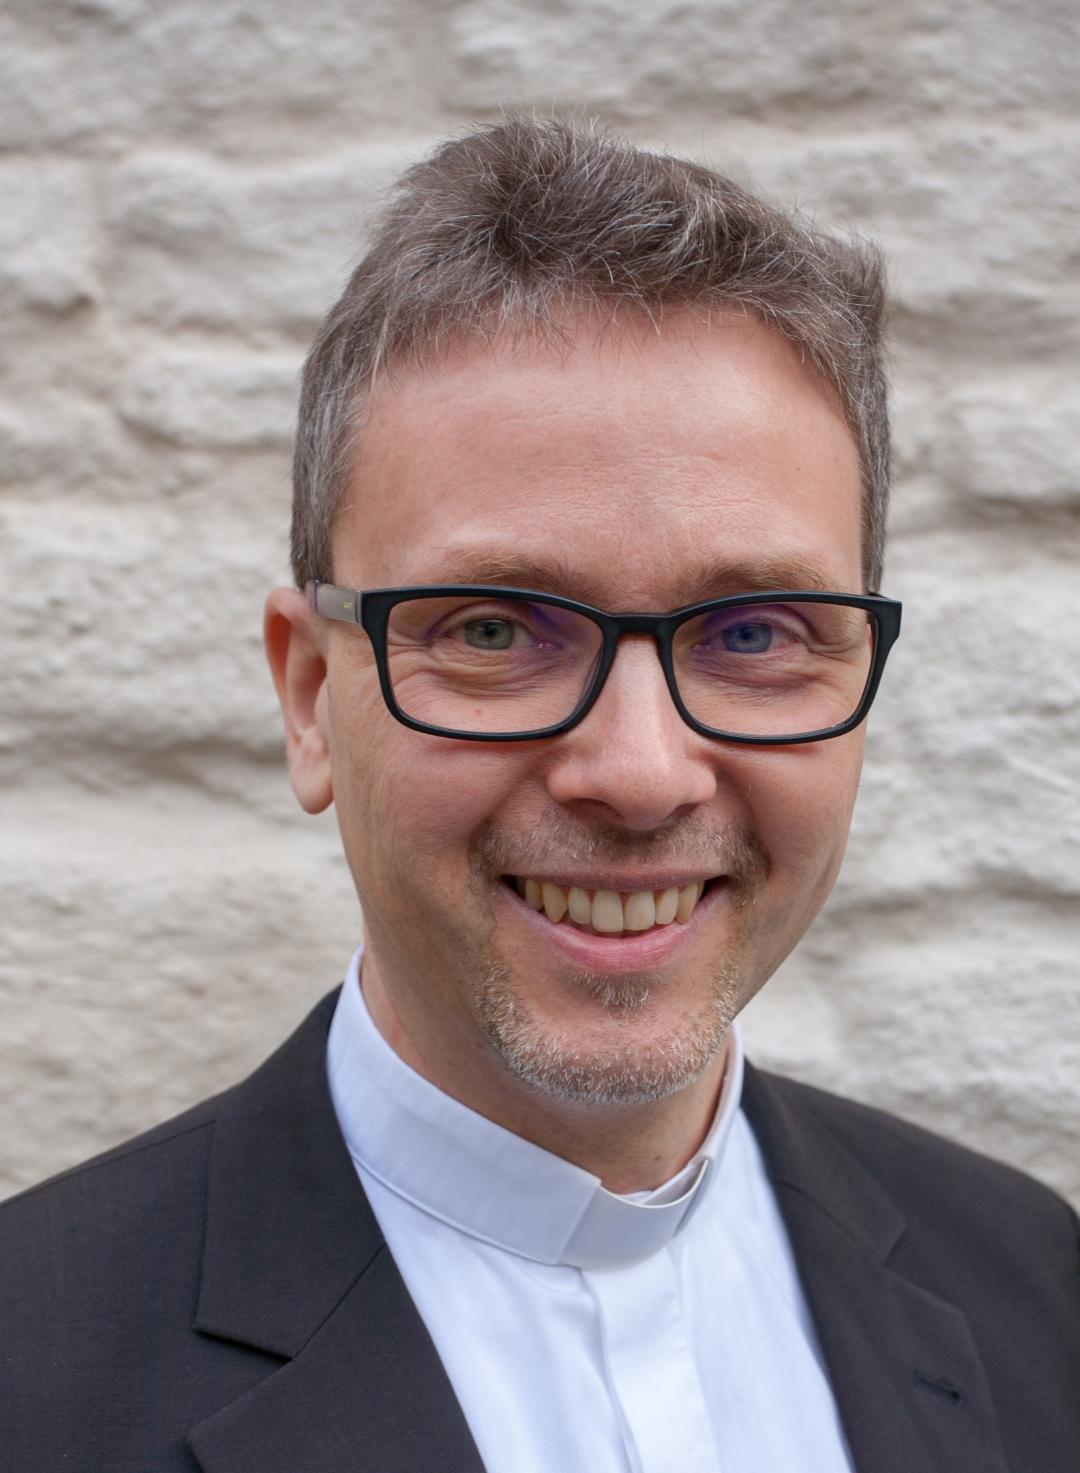 Pfarrer Markus Lerchl (c) sensum.de